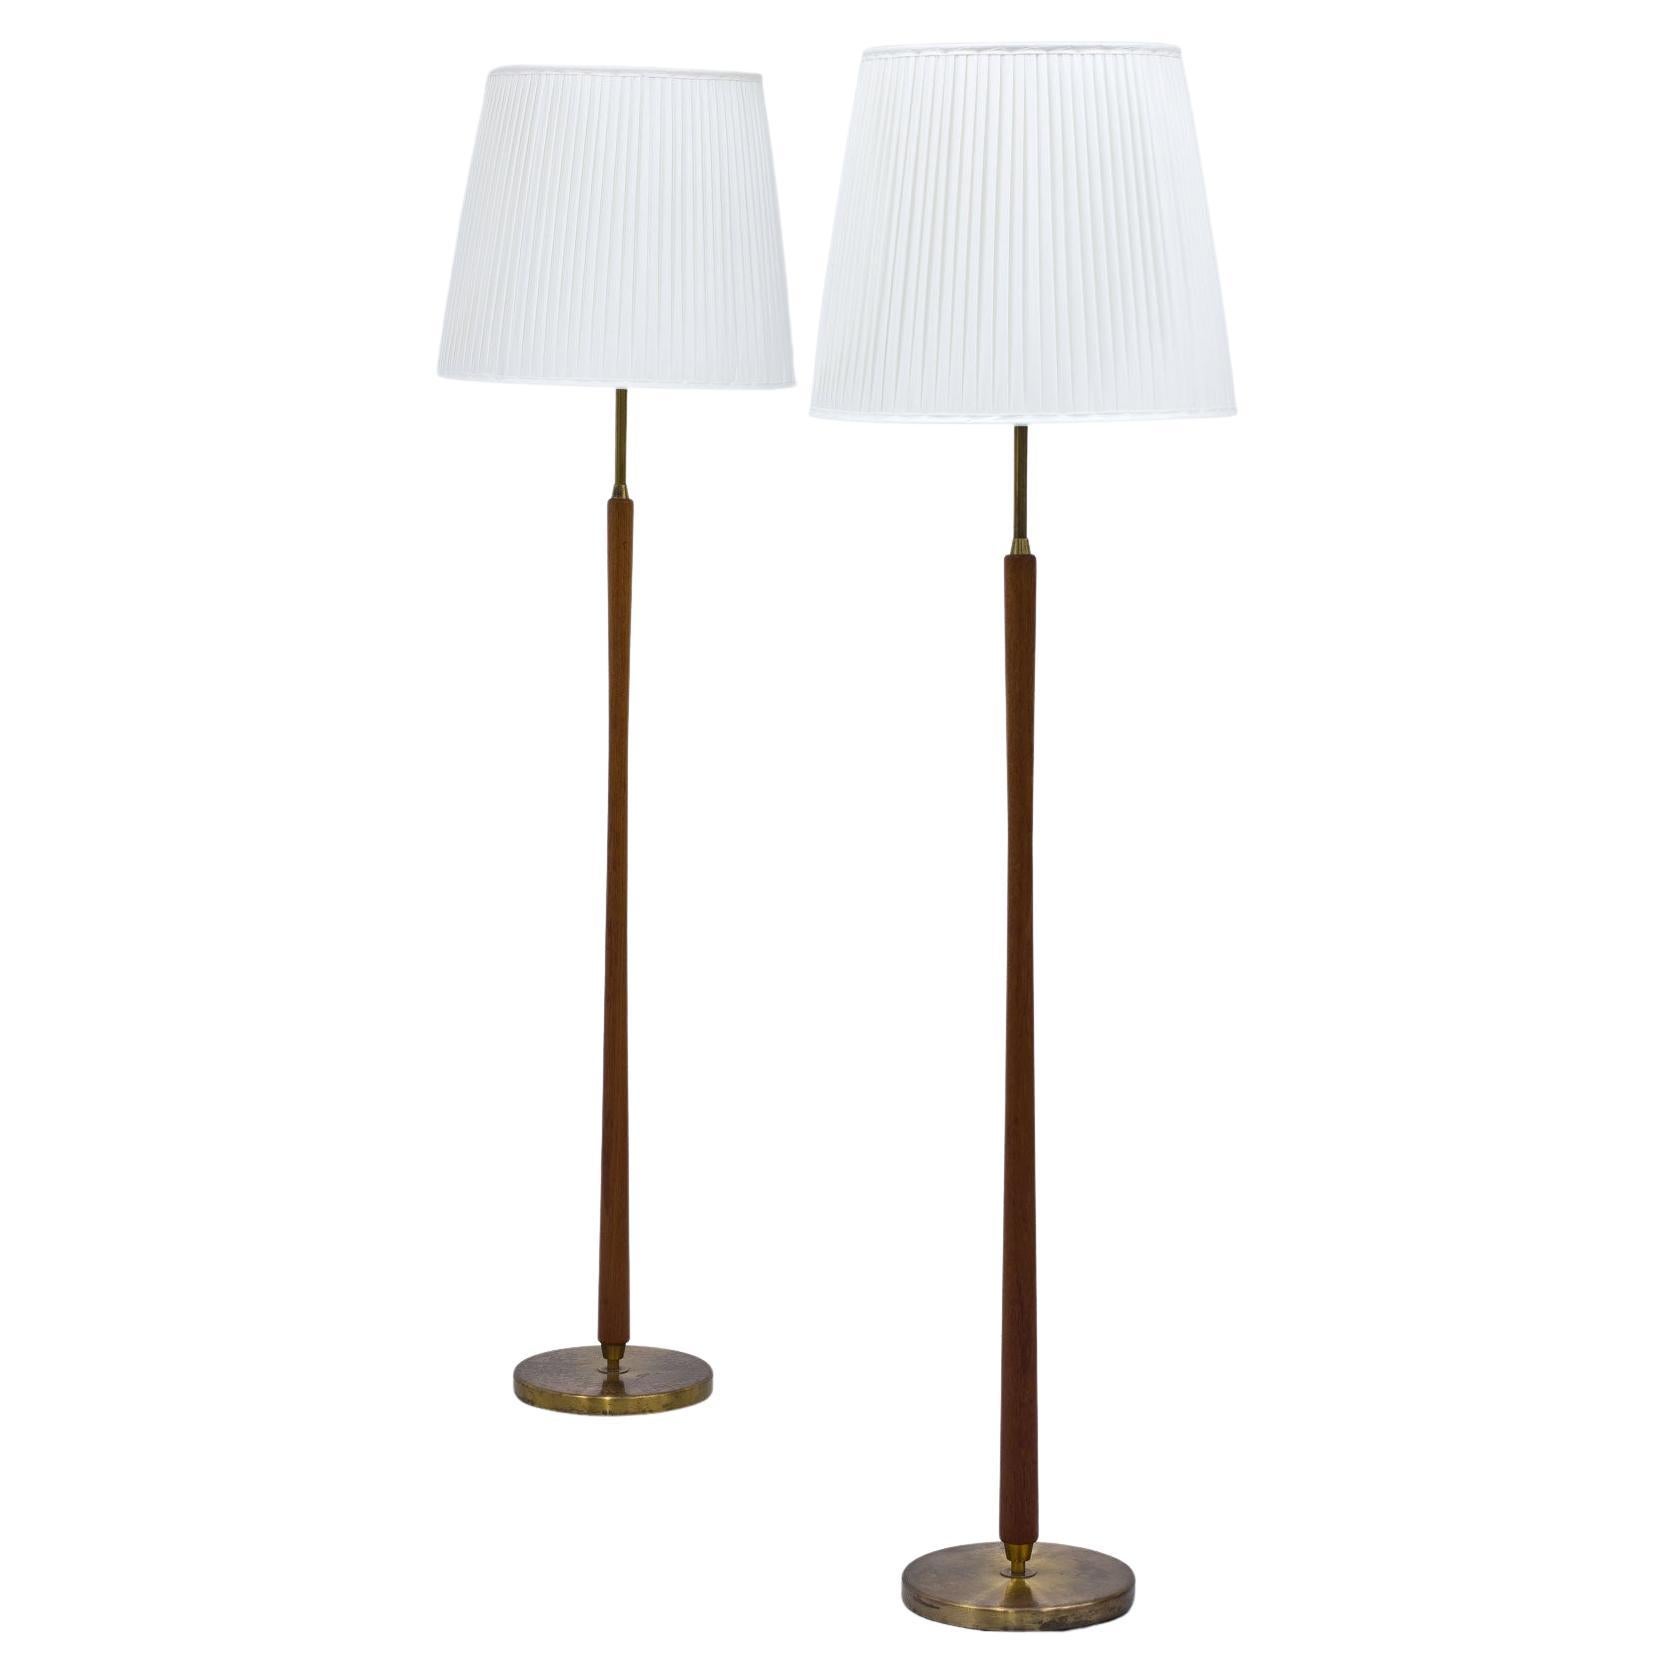 Pair of Scandinavian Modern Floor Lamps by ASEA, Sweden